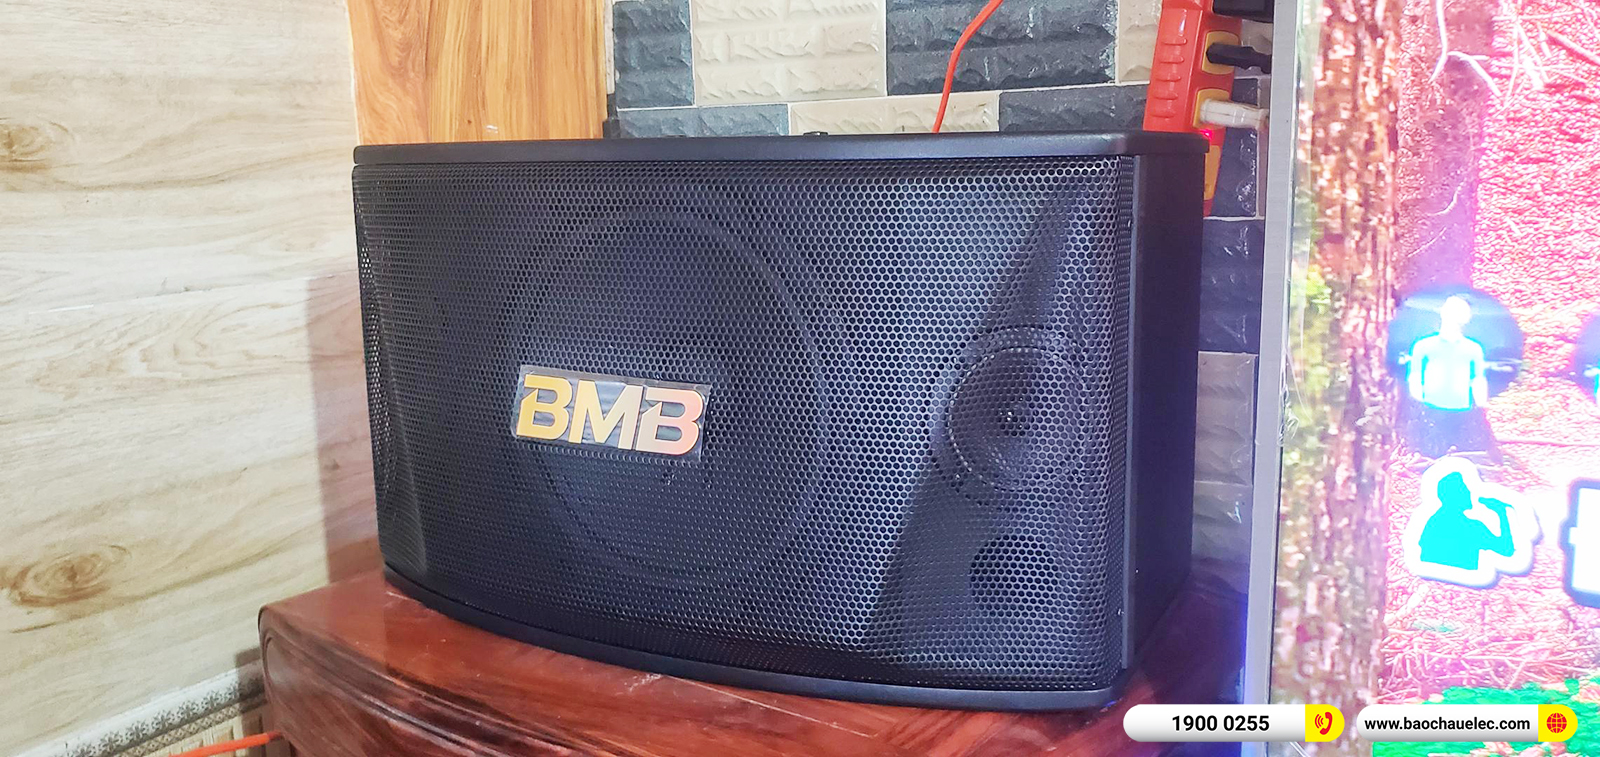 Lắp đặt dàn karaoke BMB hơn 32tr cho anh Tiền tại Hà Nội